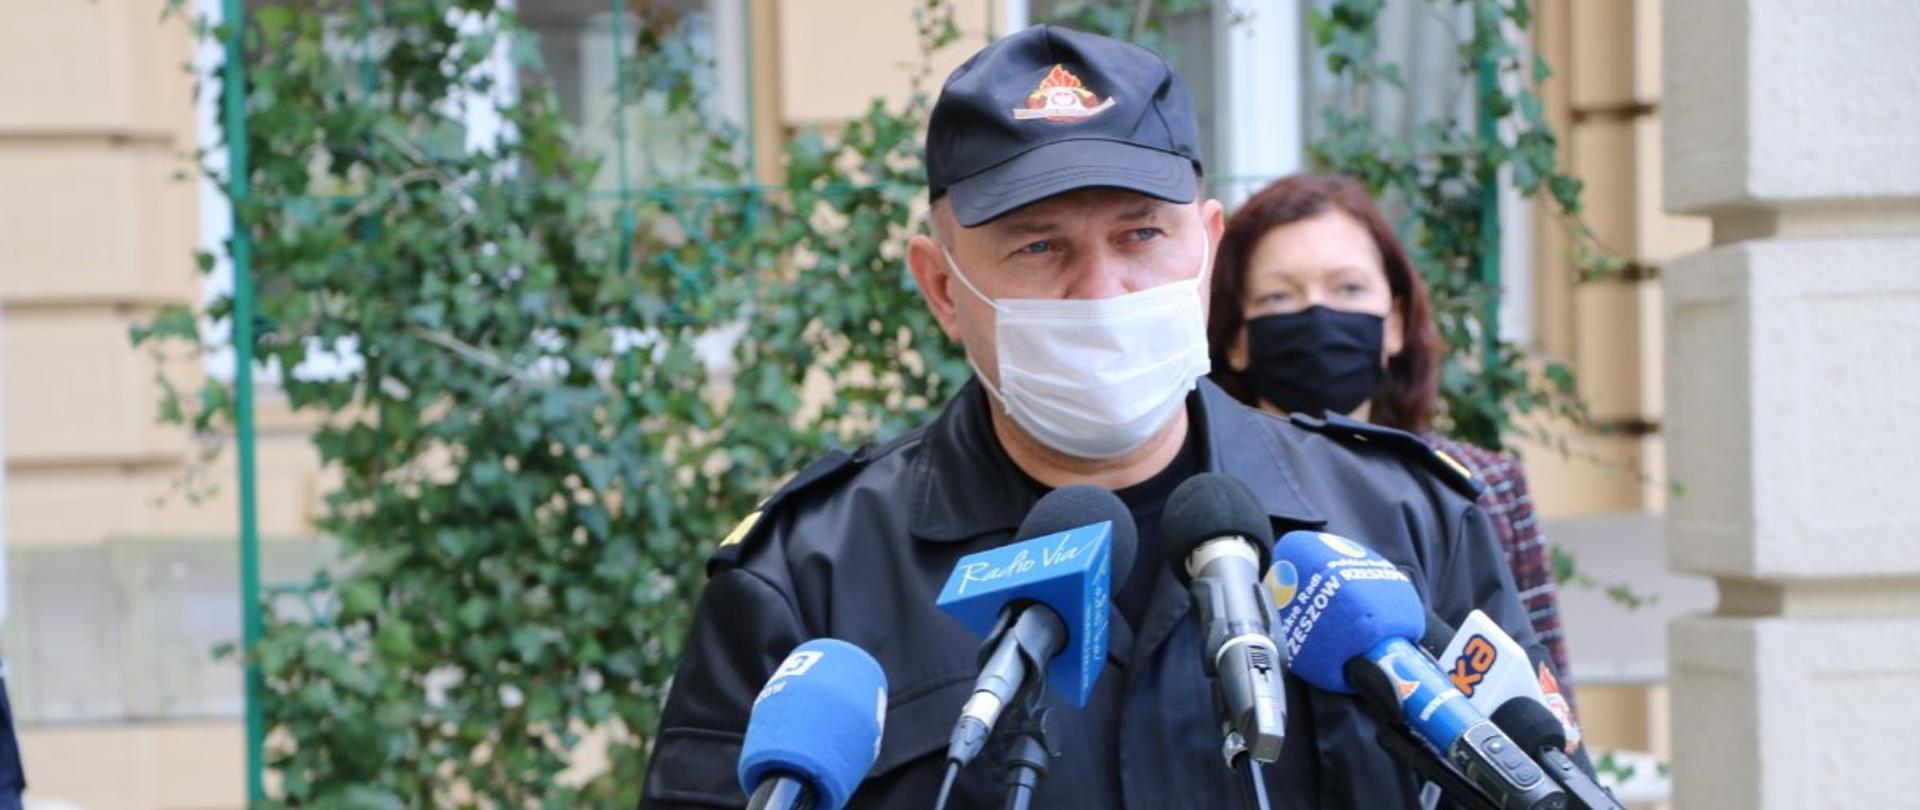 Na pierwszym planie zdjęcia nadbrygadier Andrzej Babiec stoi przed mikrofonami dziennikarzy.